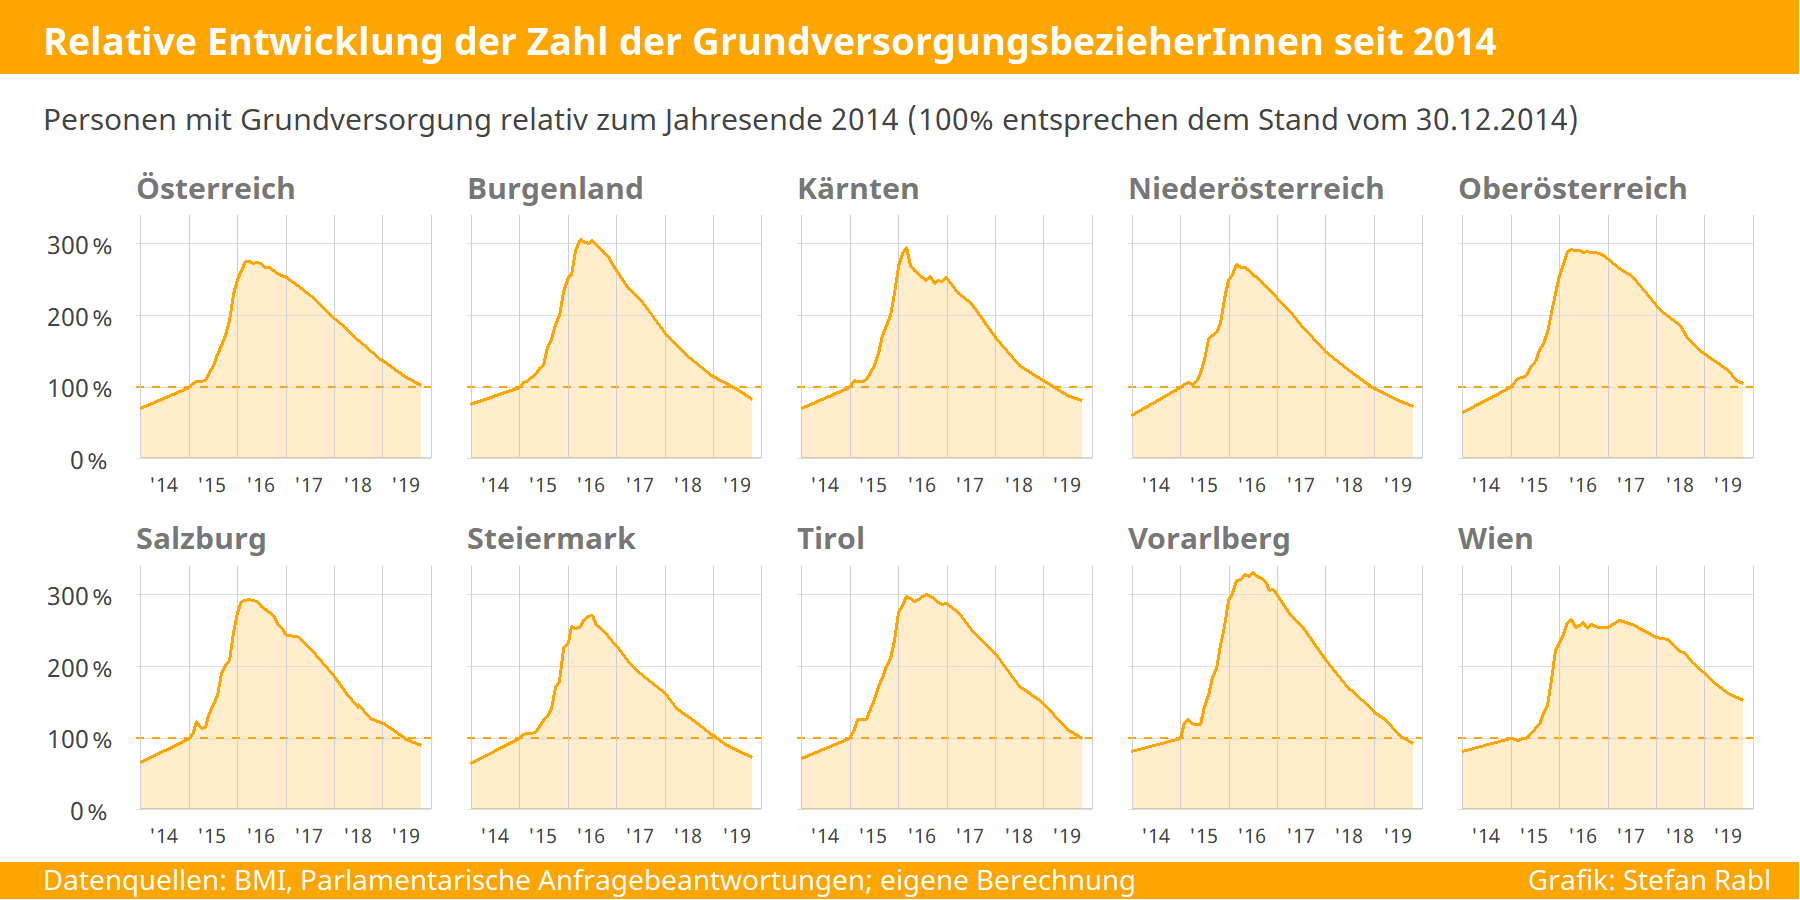 Grafik: relative Entwicklung der Personen mit Grundversorgung in den Bundesländern 2014-2019 (Basis Jahresende 2014)